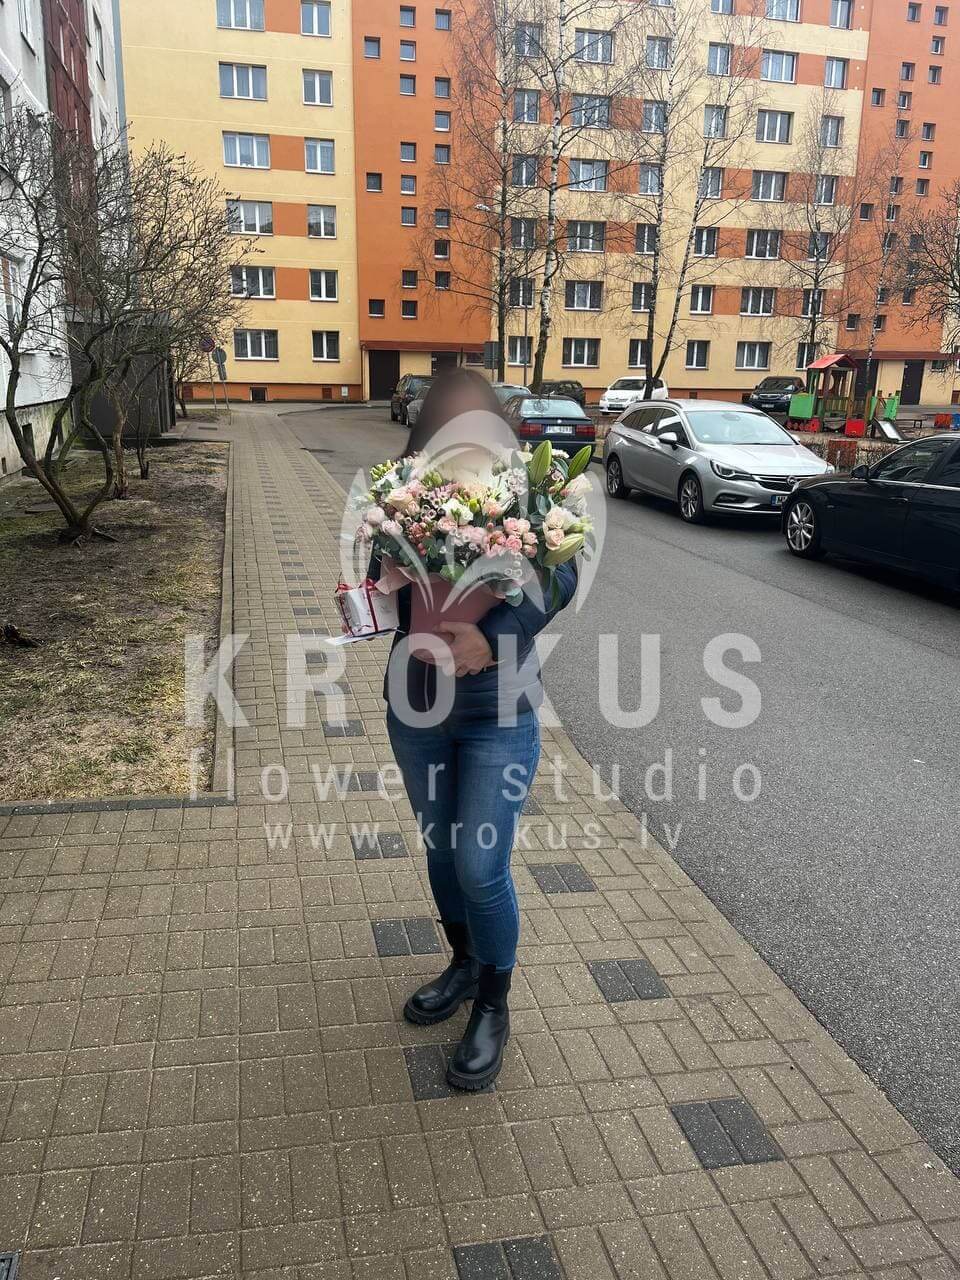 Ziedu piegāde Latvia Salaspils (kastekrūmrozeskallaslilijaskrēmkrāsas rozeswaxflowereikaliptslizantes)